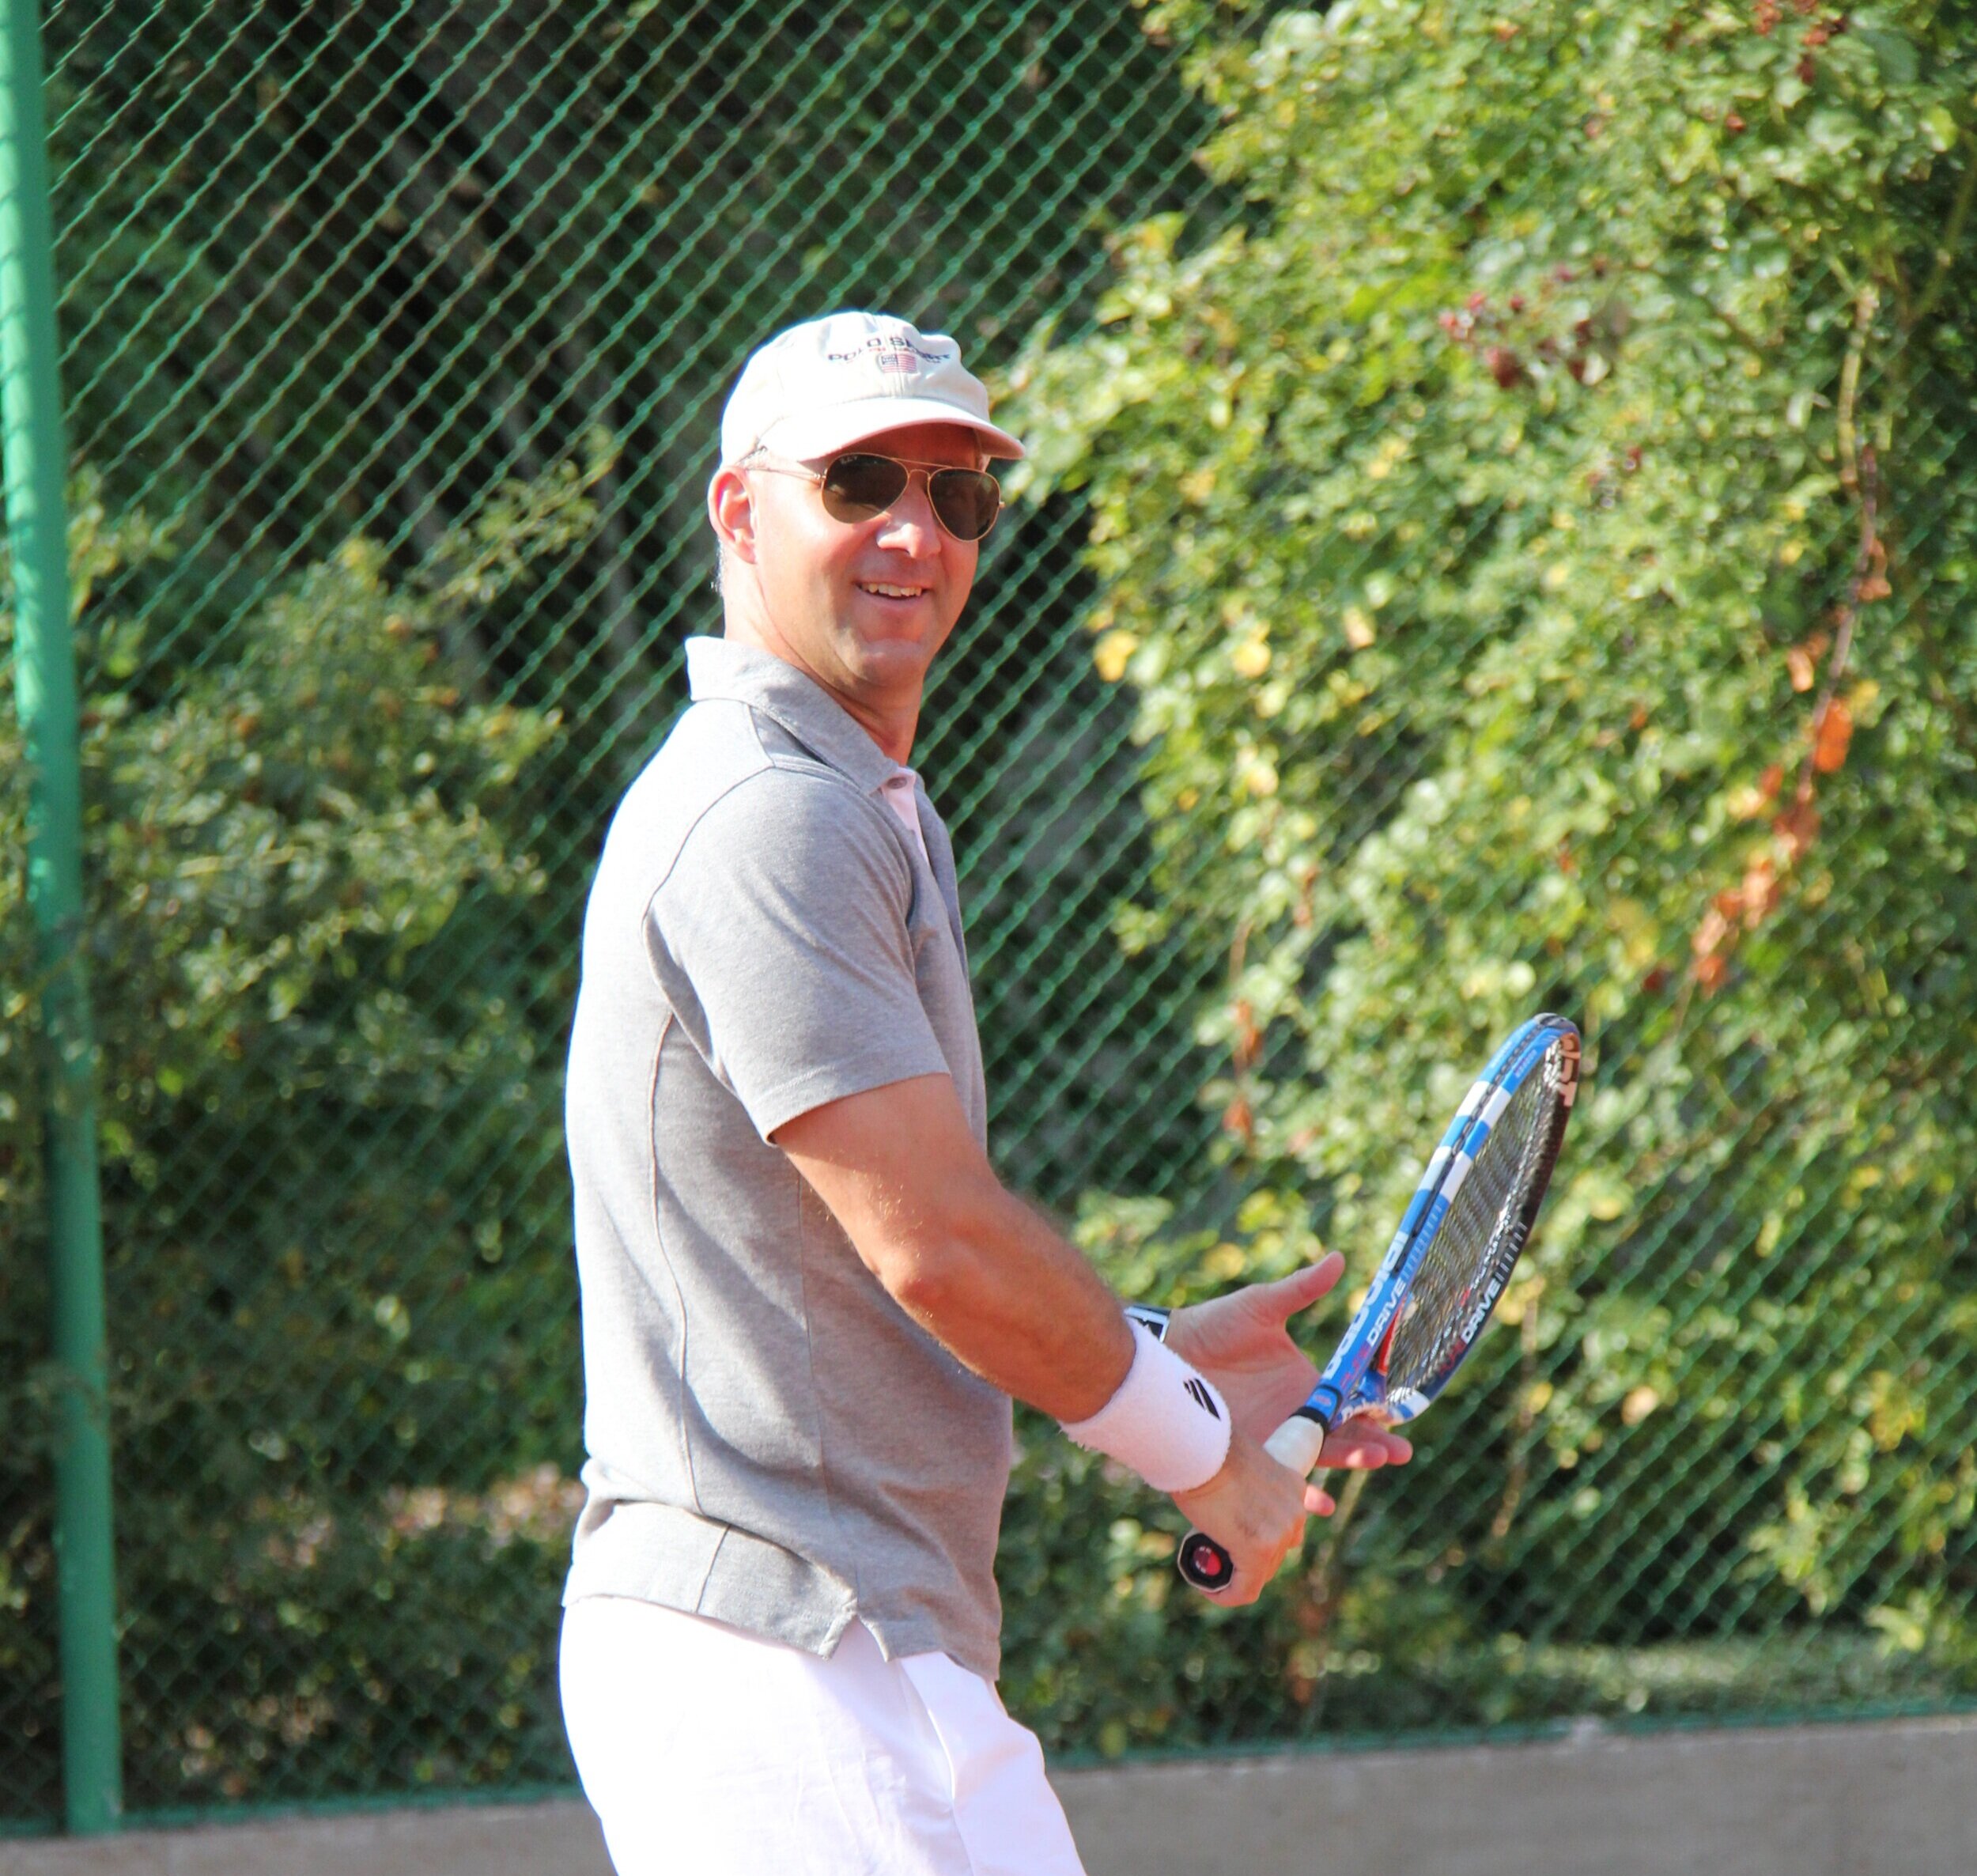 Ahlenblom spelar tennis